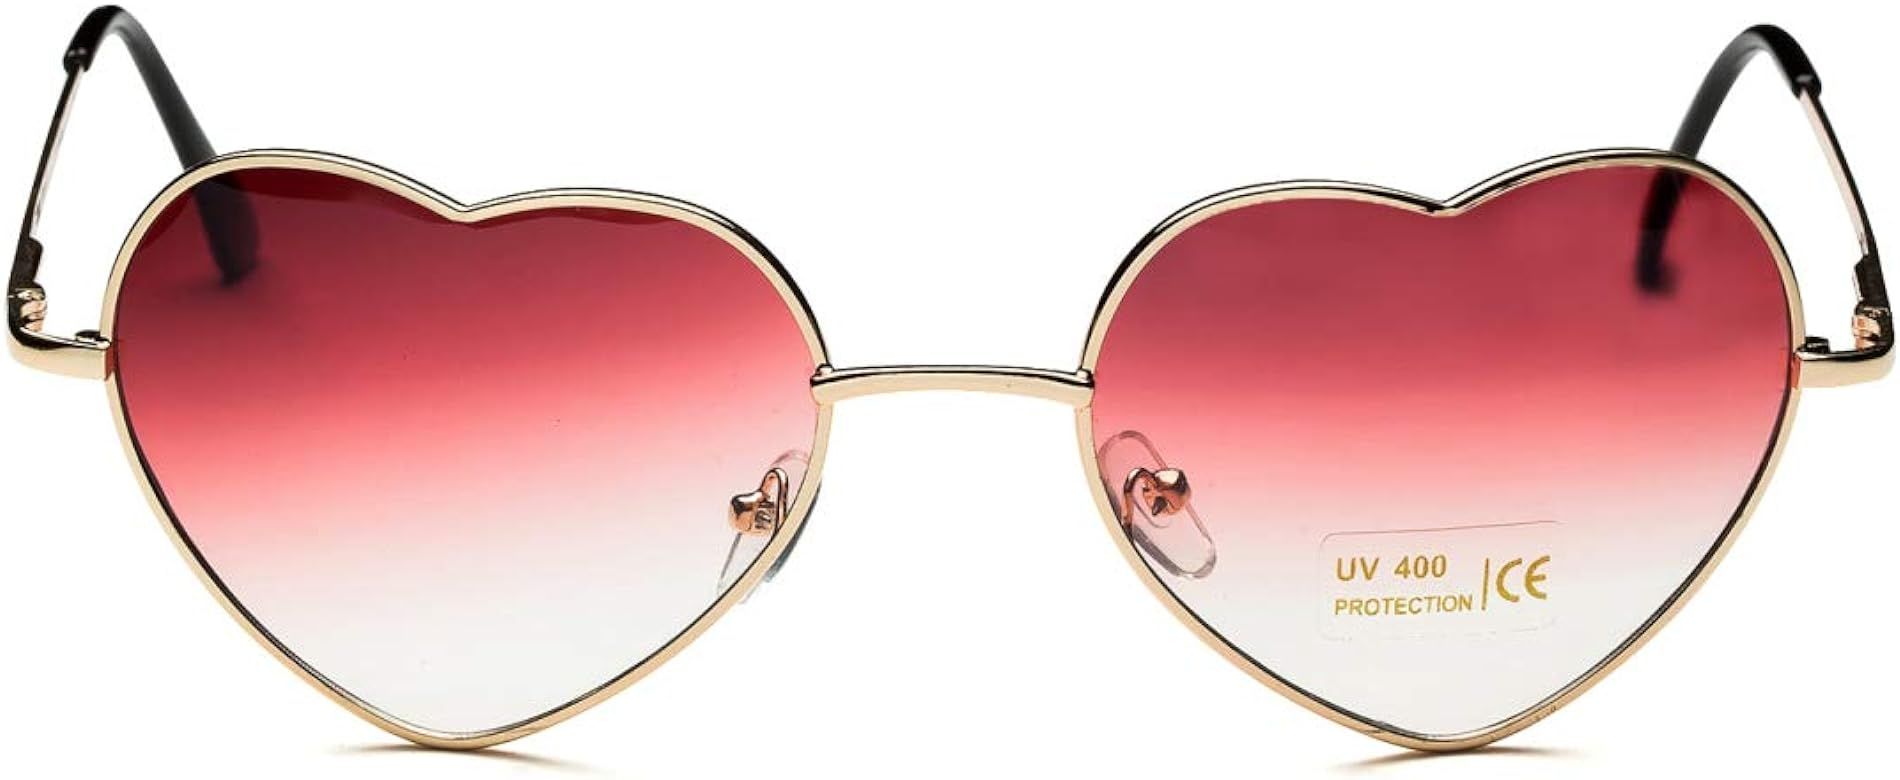 Dollger Heart Sunglasses Thin Metal Frame Lovely Heart Style for Women | Amazon (US)